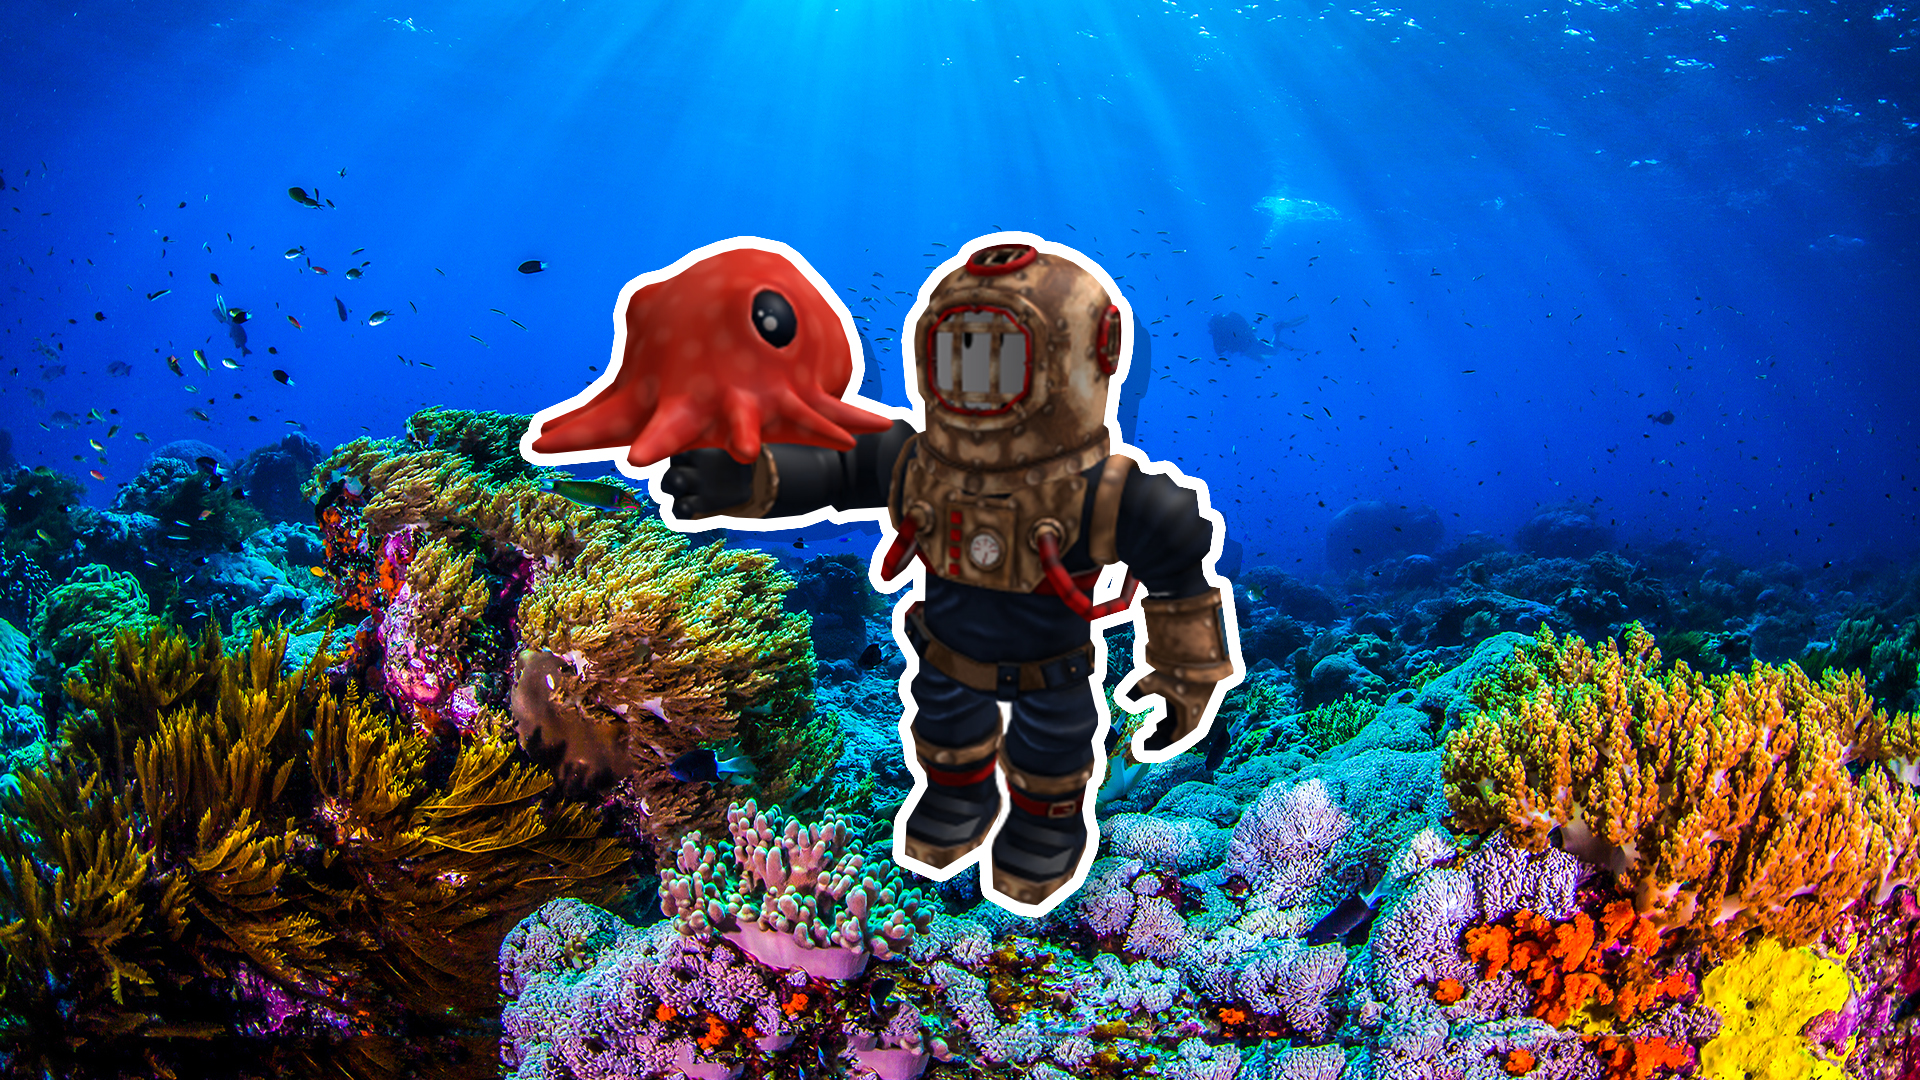 A deep sea diver